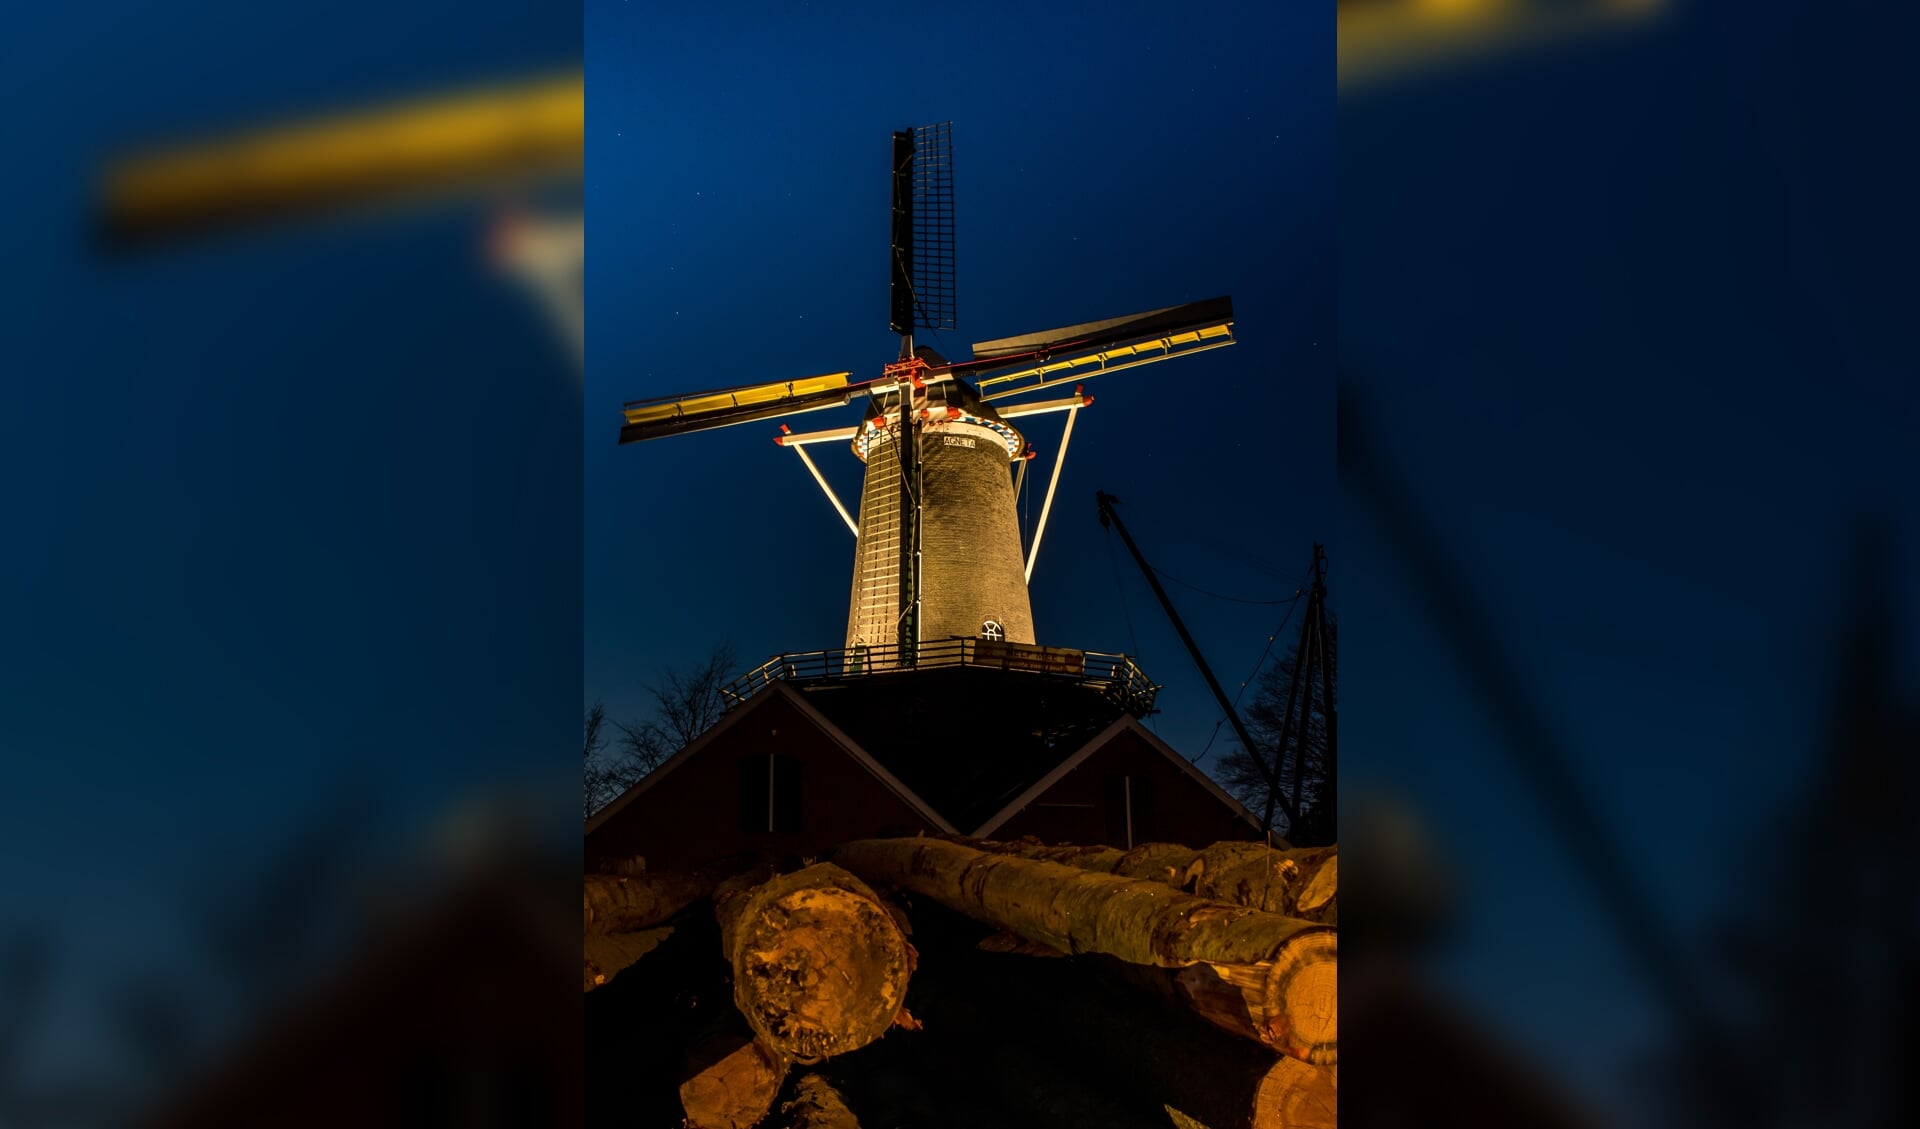 De lampen zetten de Agneta molen iedere avond tot 23.30 uur in het licht. Foto: Kees Avé.